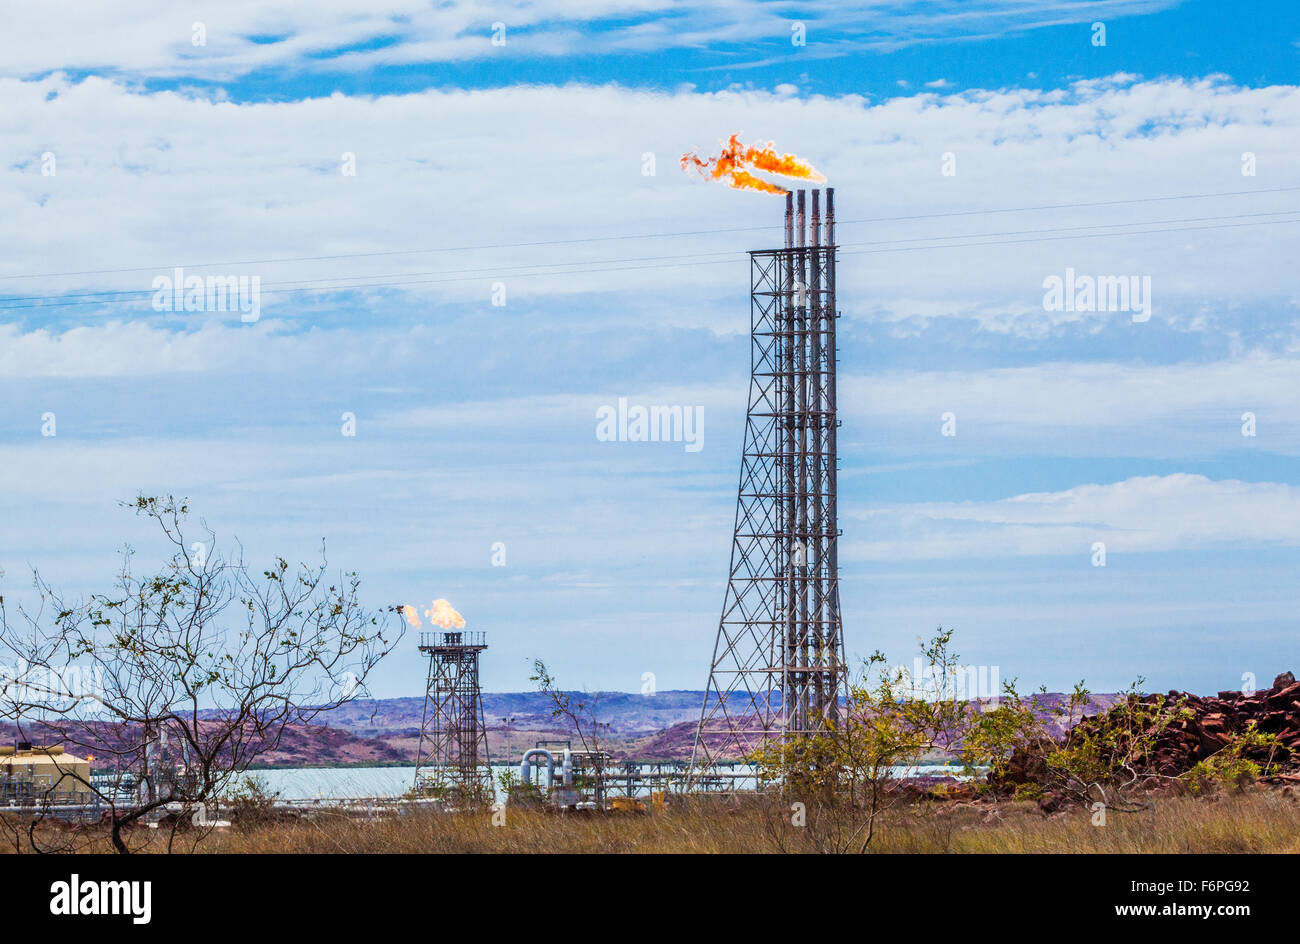 Australien, Western Australia, Pilbara, Karratha, gas-Flare Stacks am Woodside Gasaufbereitungsanlage auf der Burrup-Halbinsel Stockfoto